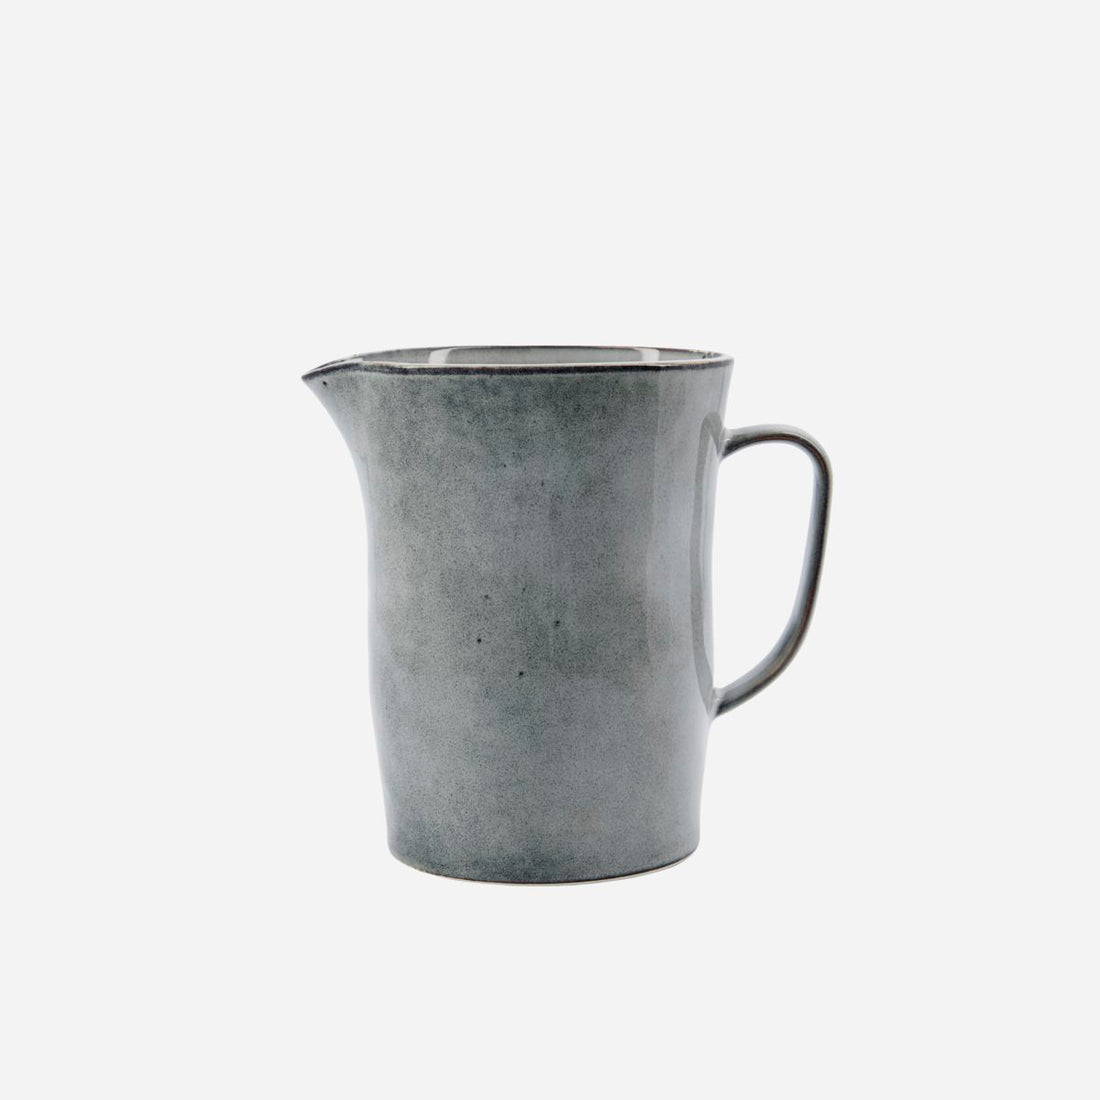 House Doctor pot, rustic, gray/blue-l: 16 cm, w: 11.5 cm, h: 15.5 cm